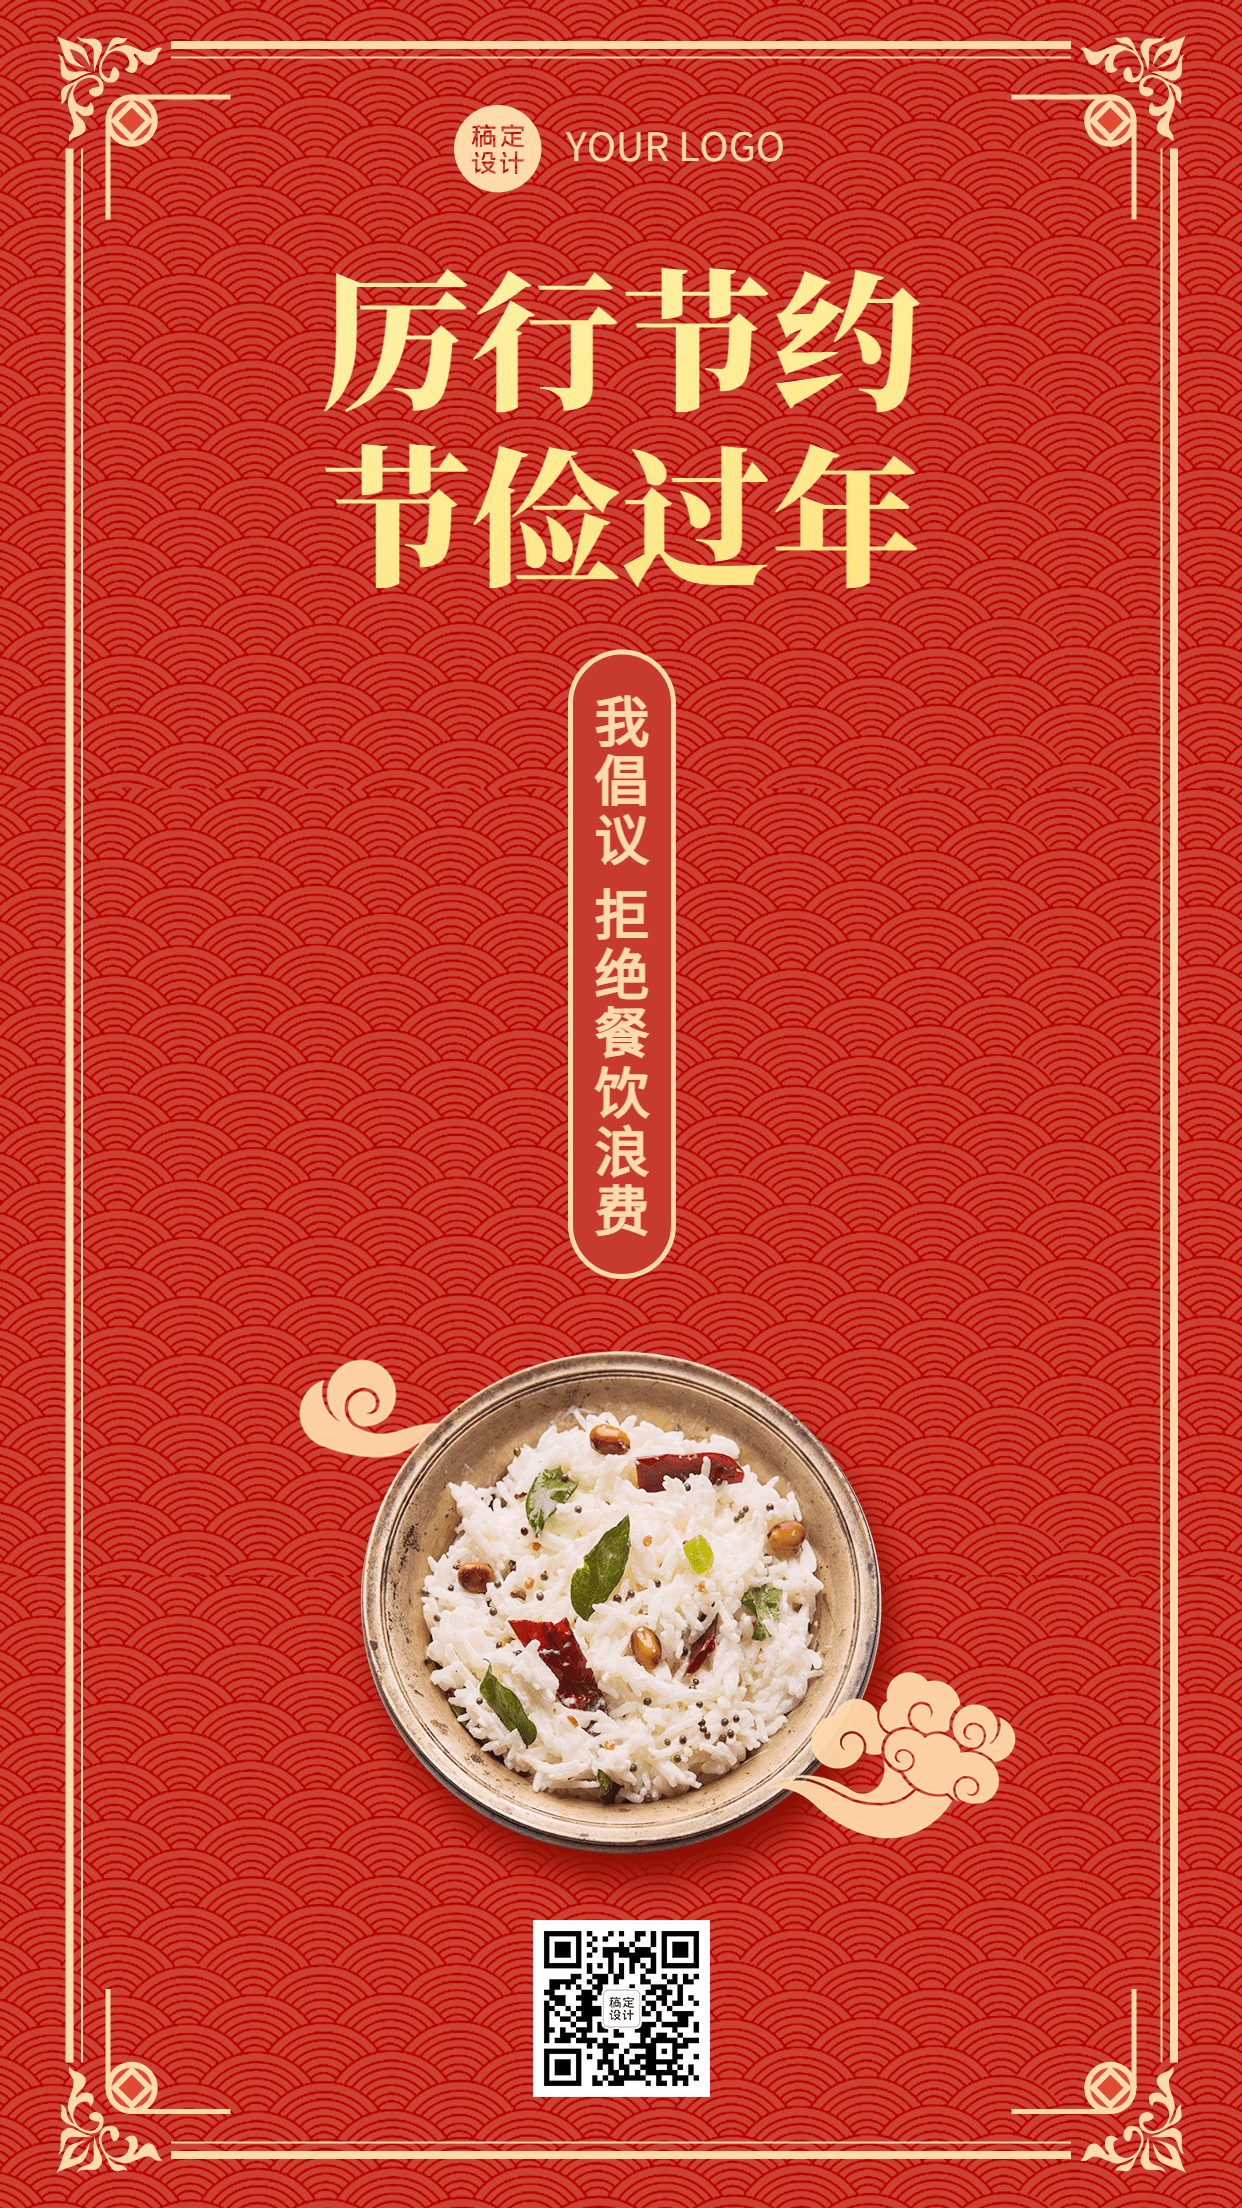 春节食品提示手机海报预览效果